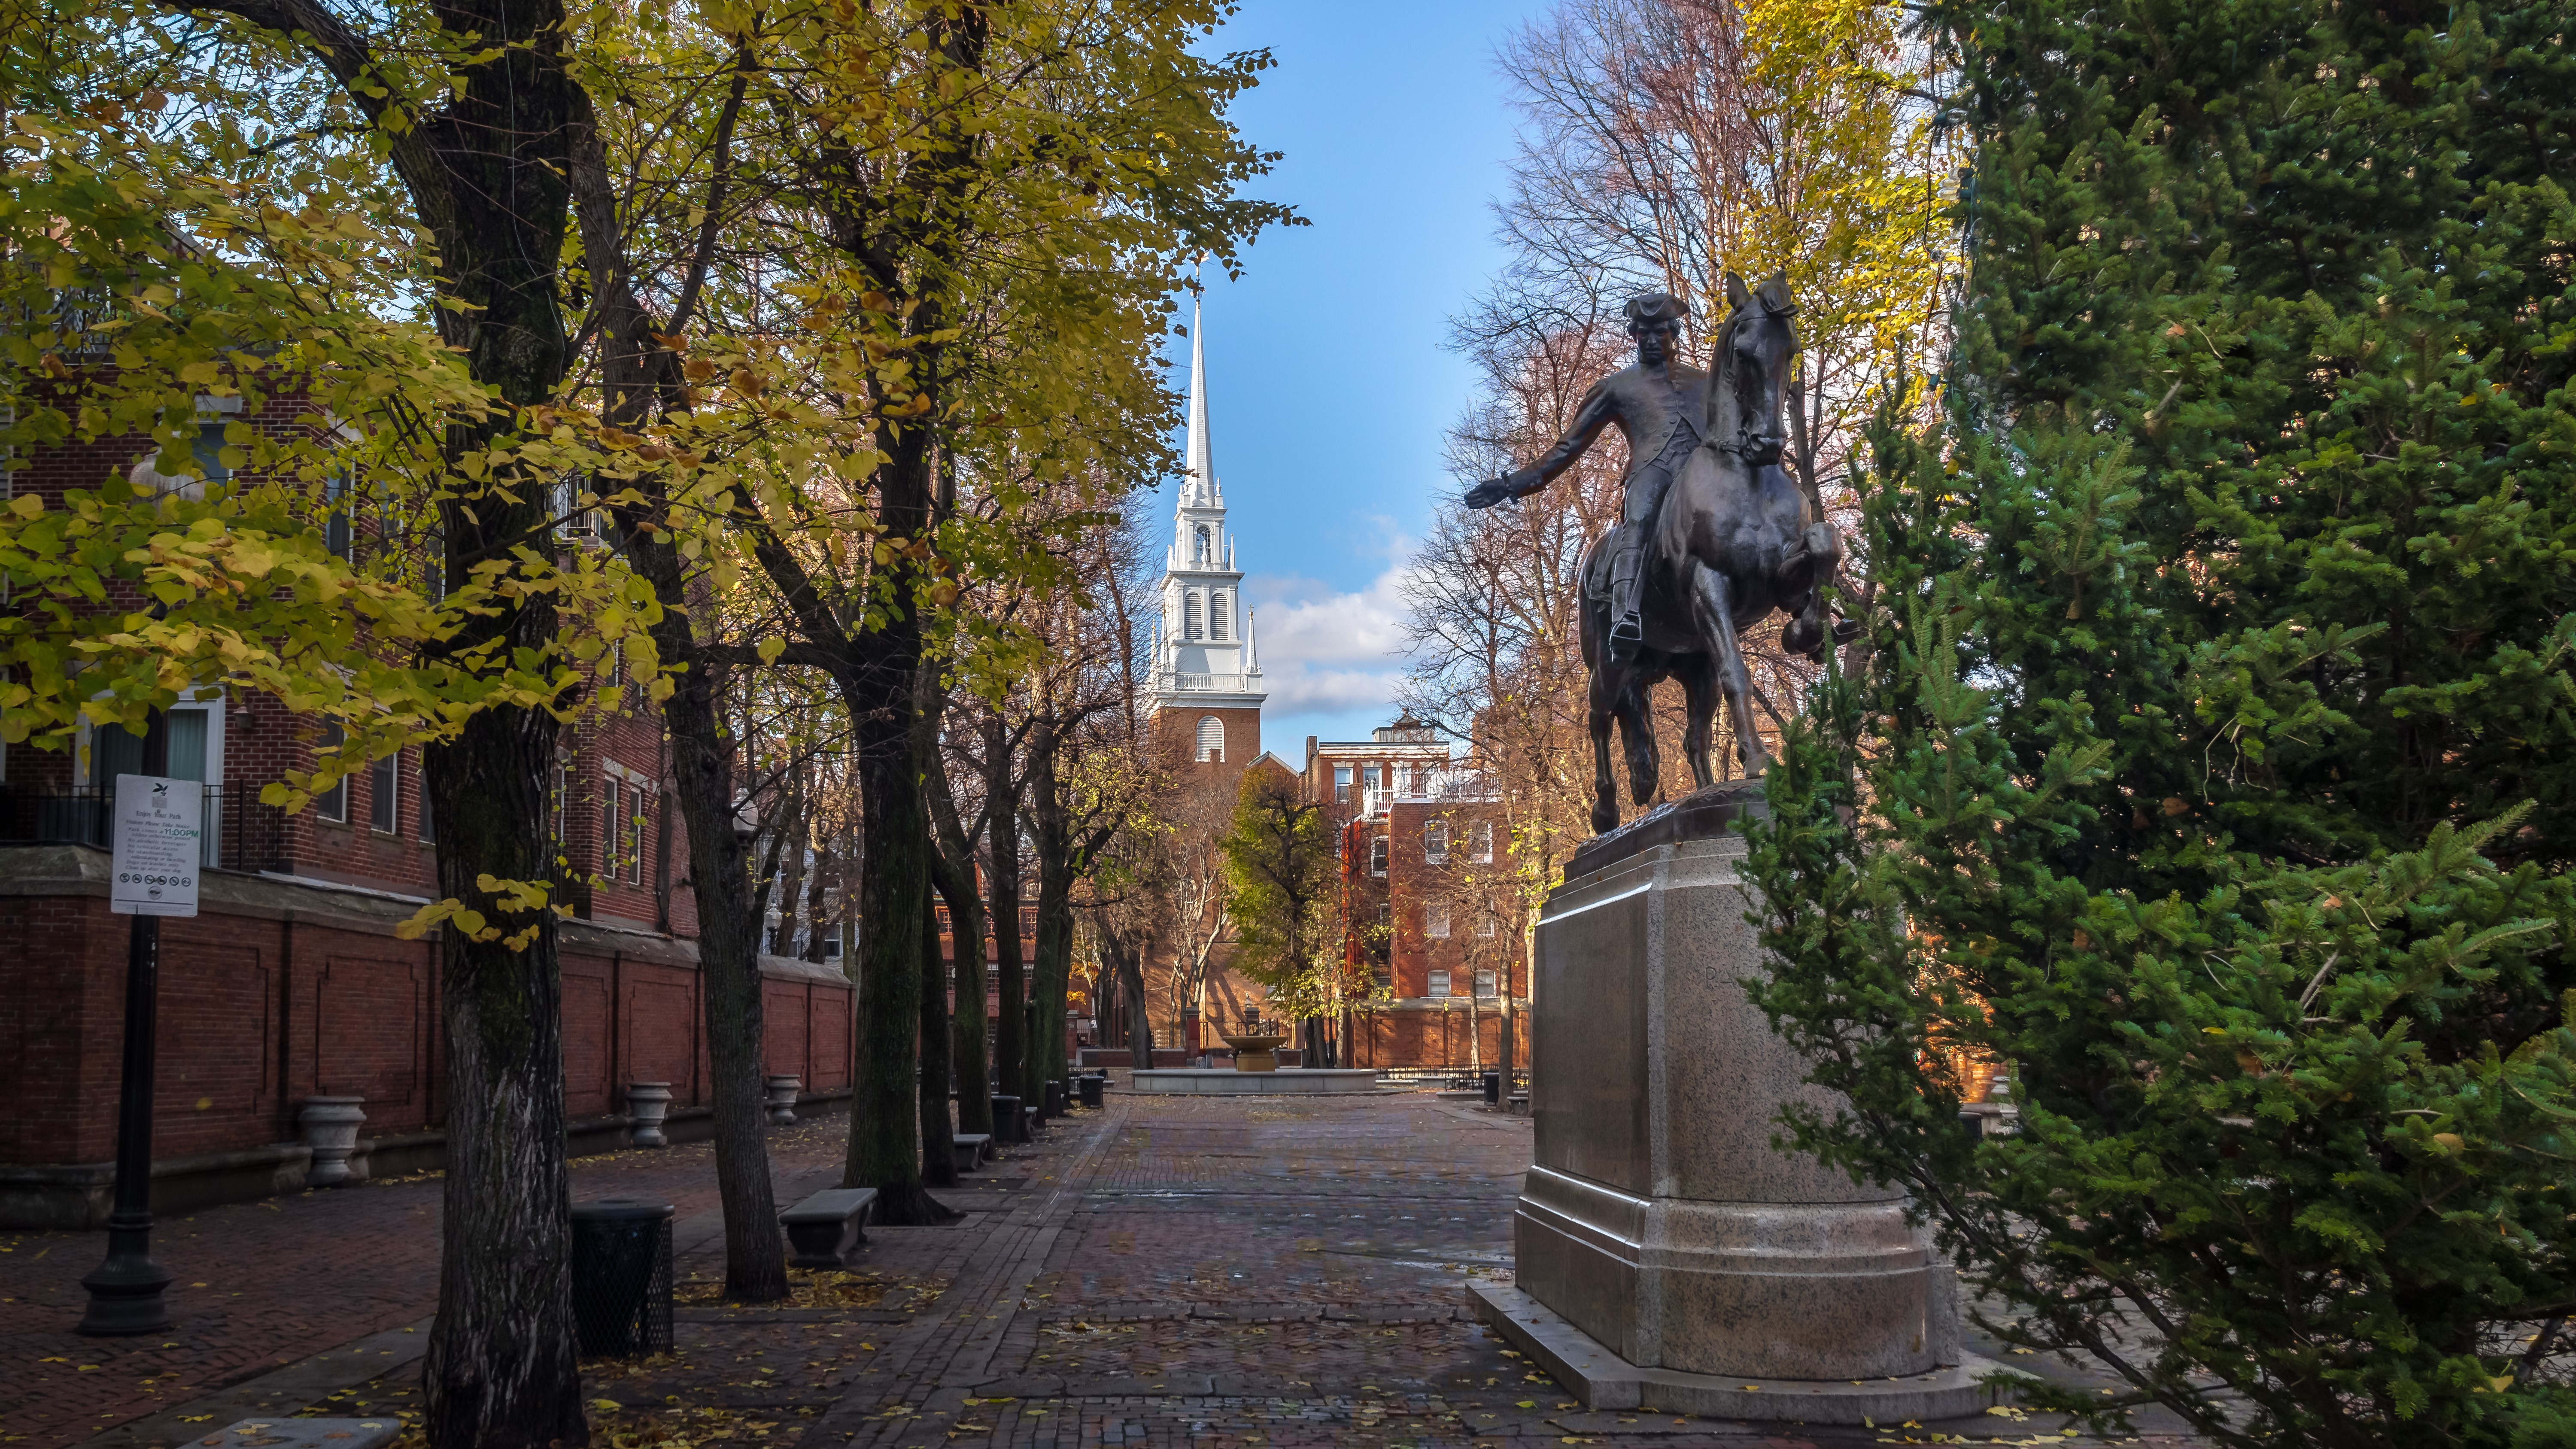 Paul Revere Statue, Old North Church - Senior Trip to Boston